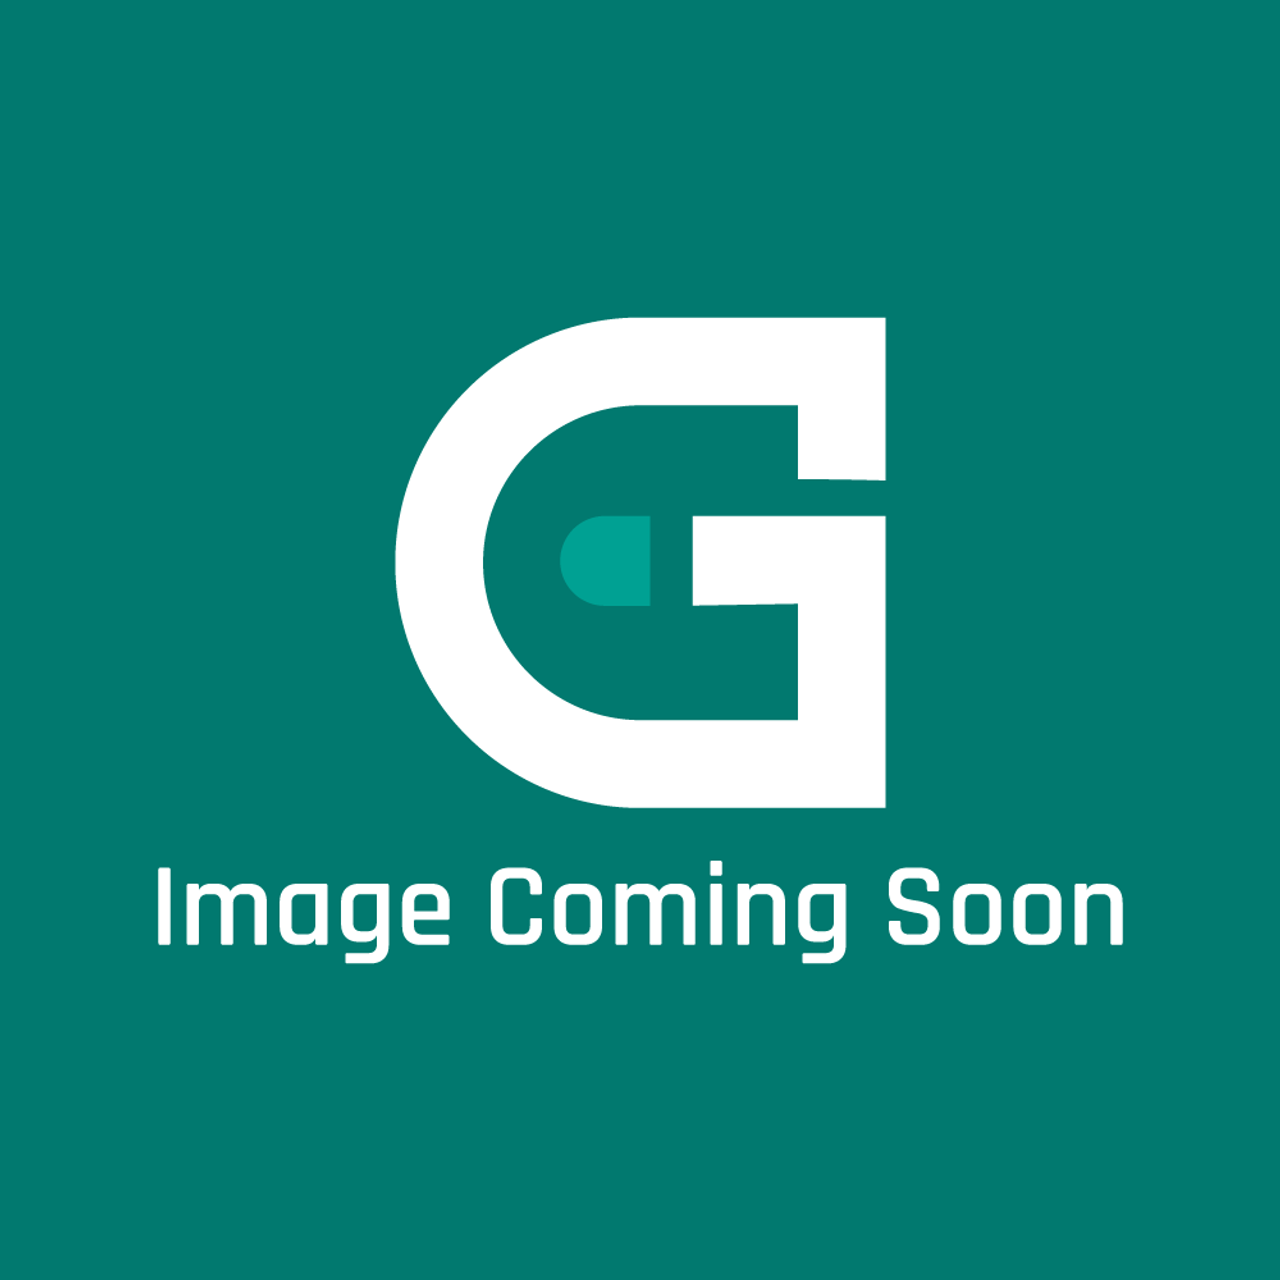 Alto-Shaam GS-37461 - Gasketlowertrolley Gaske T - Image Coming Soon!